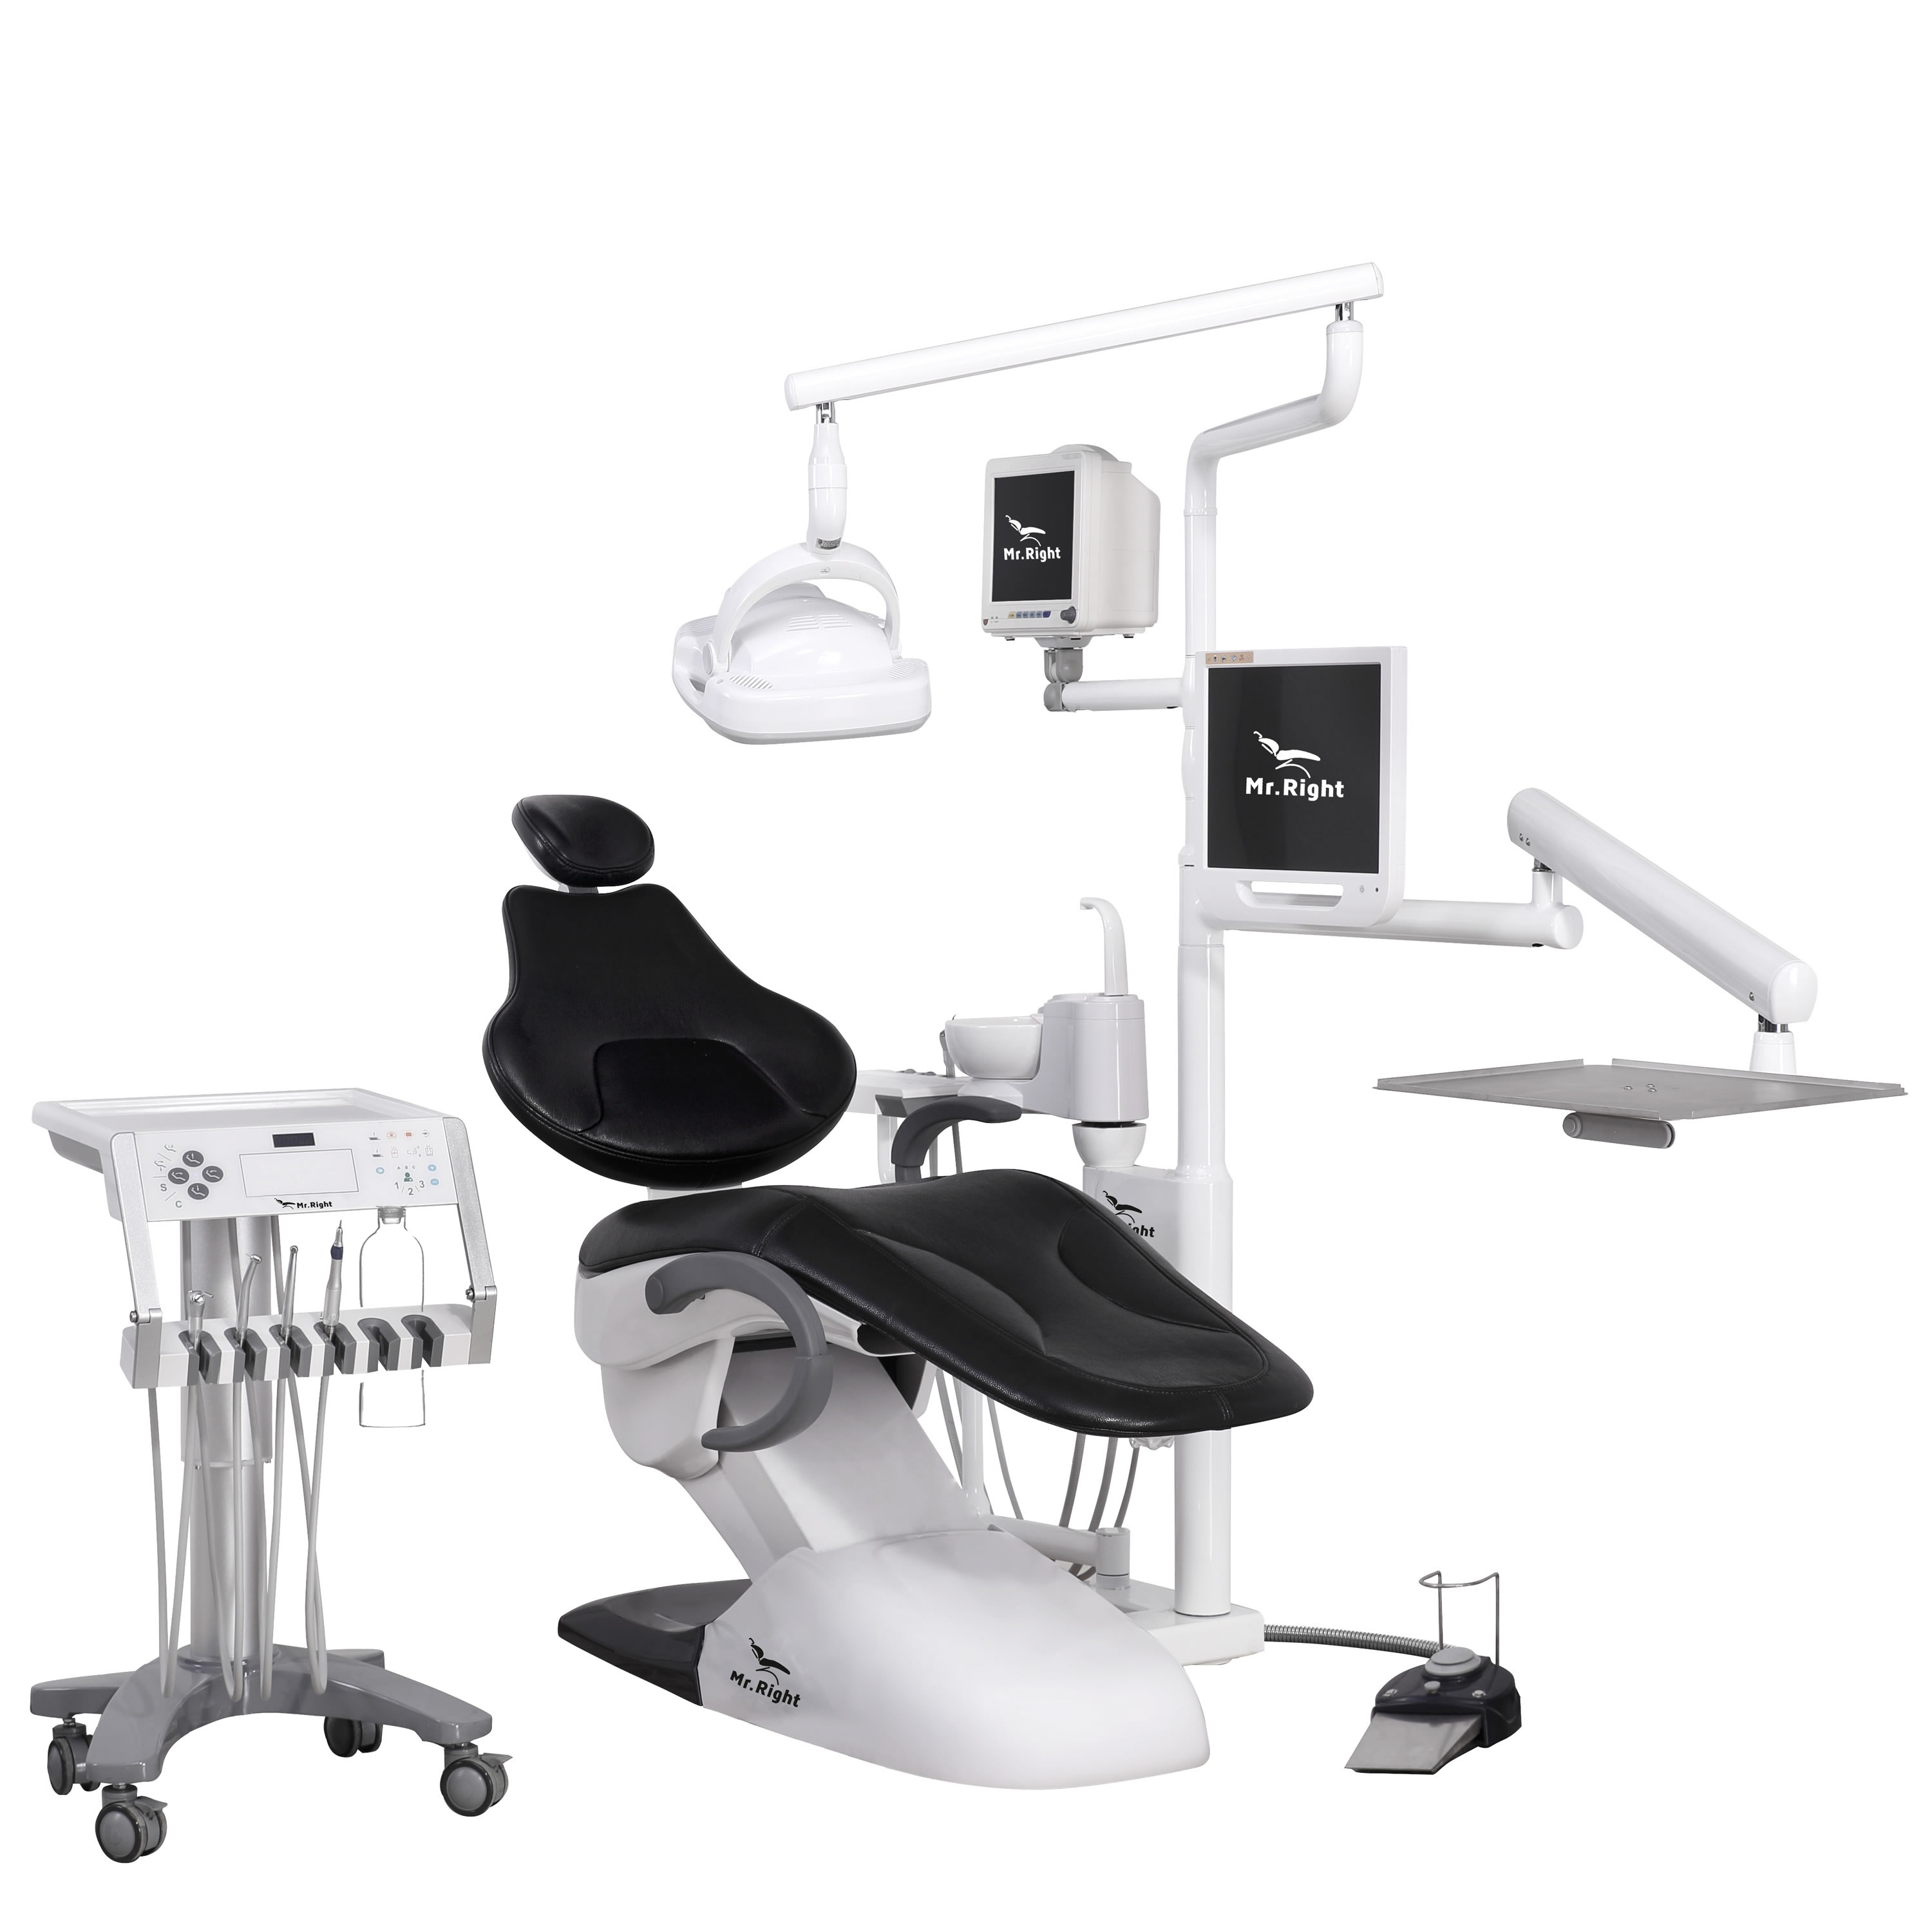 R9 dental chair